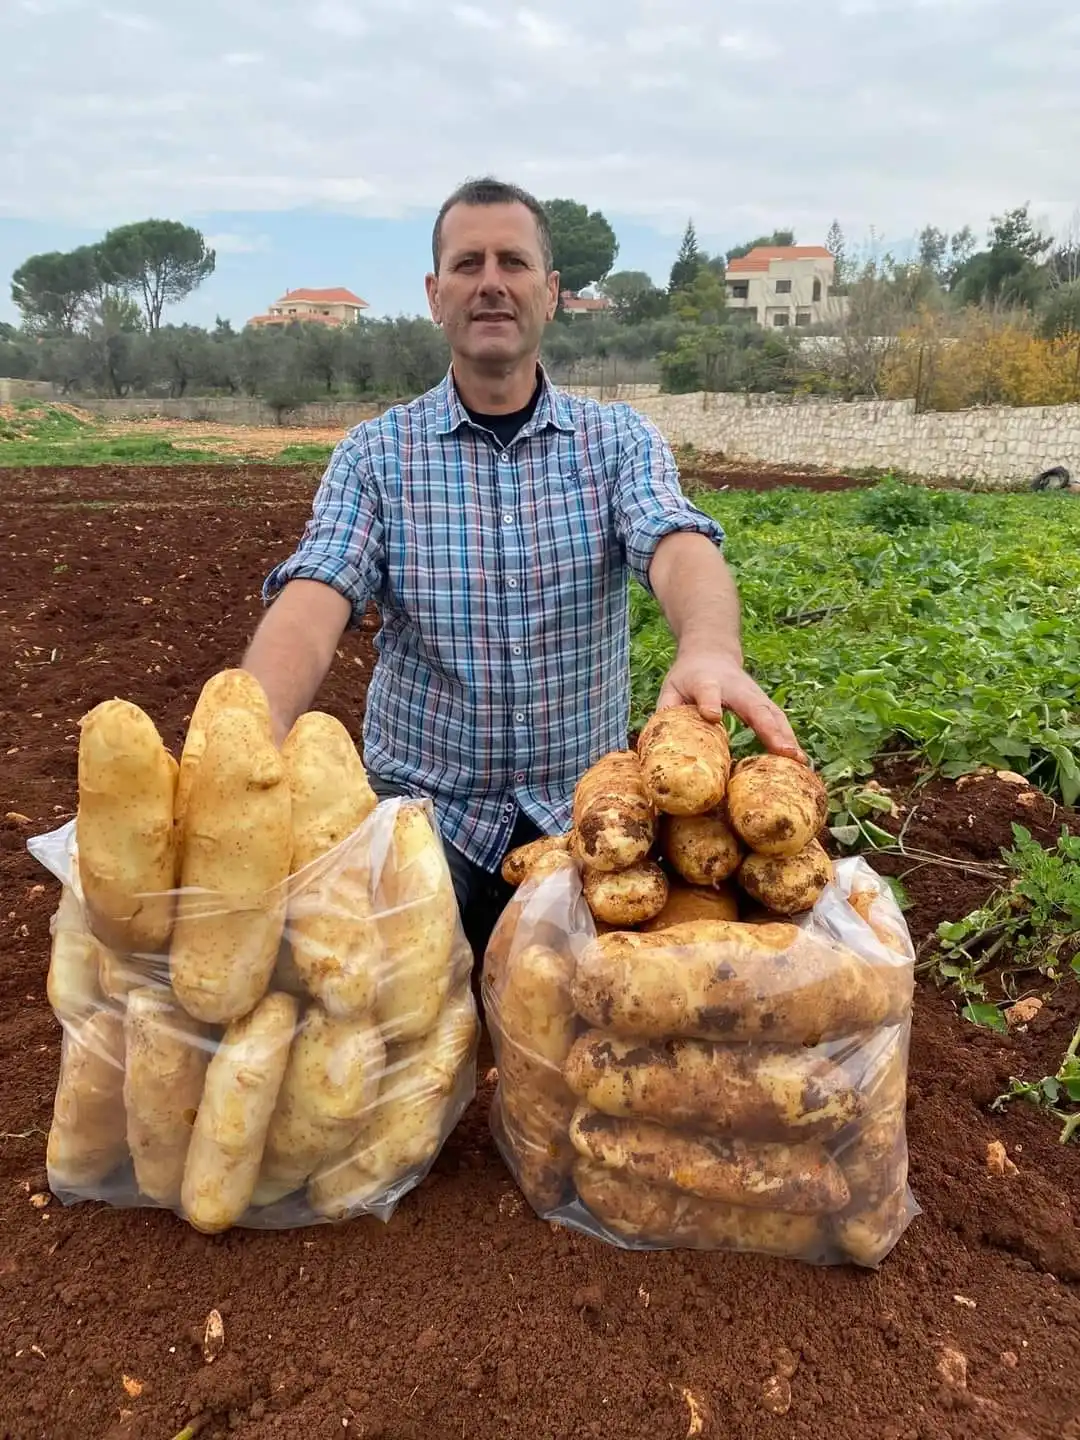 الأستاذ الجامعي عباس بشروش متباهياً بإنتاجه من البطاطا (الصورة كامل وهبي)